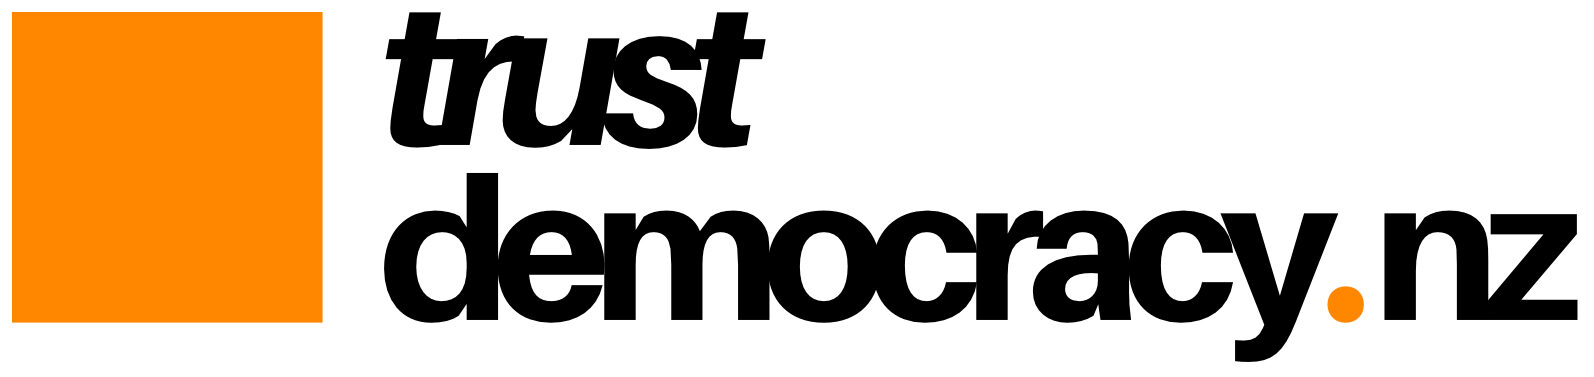 Trust Democracy's logo